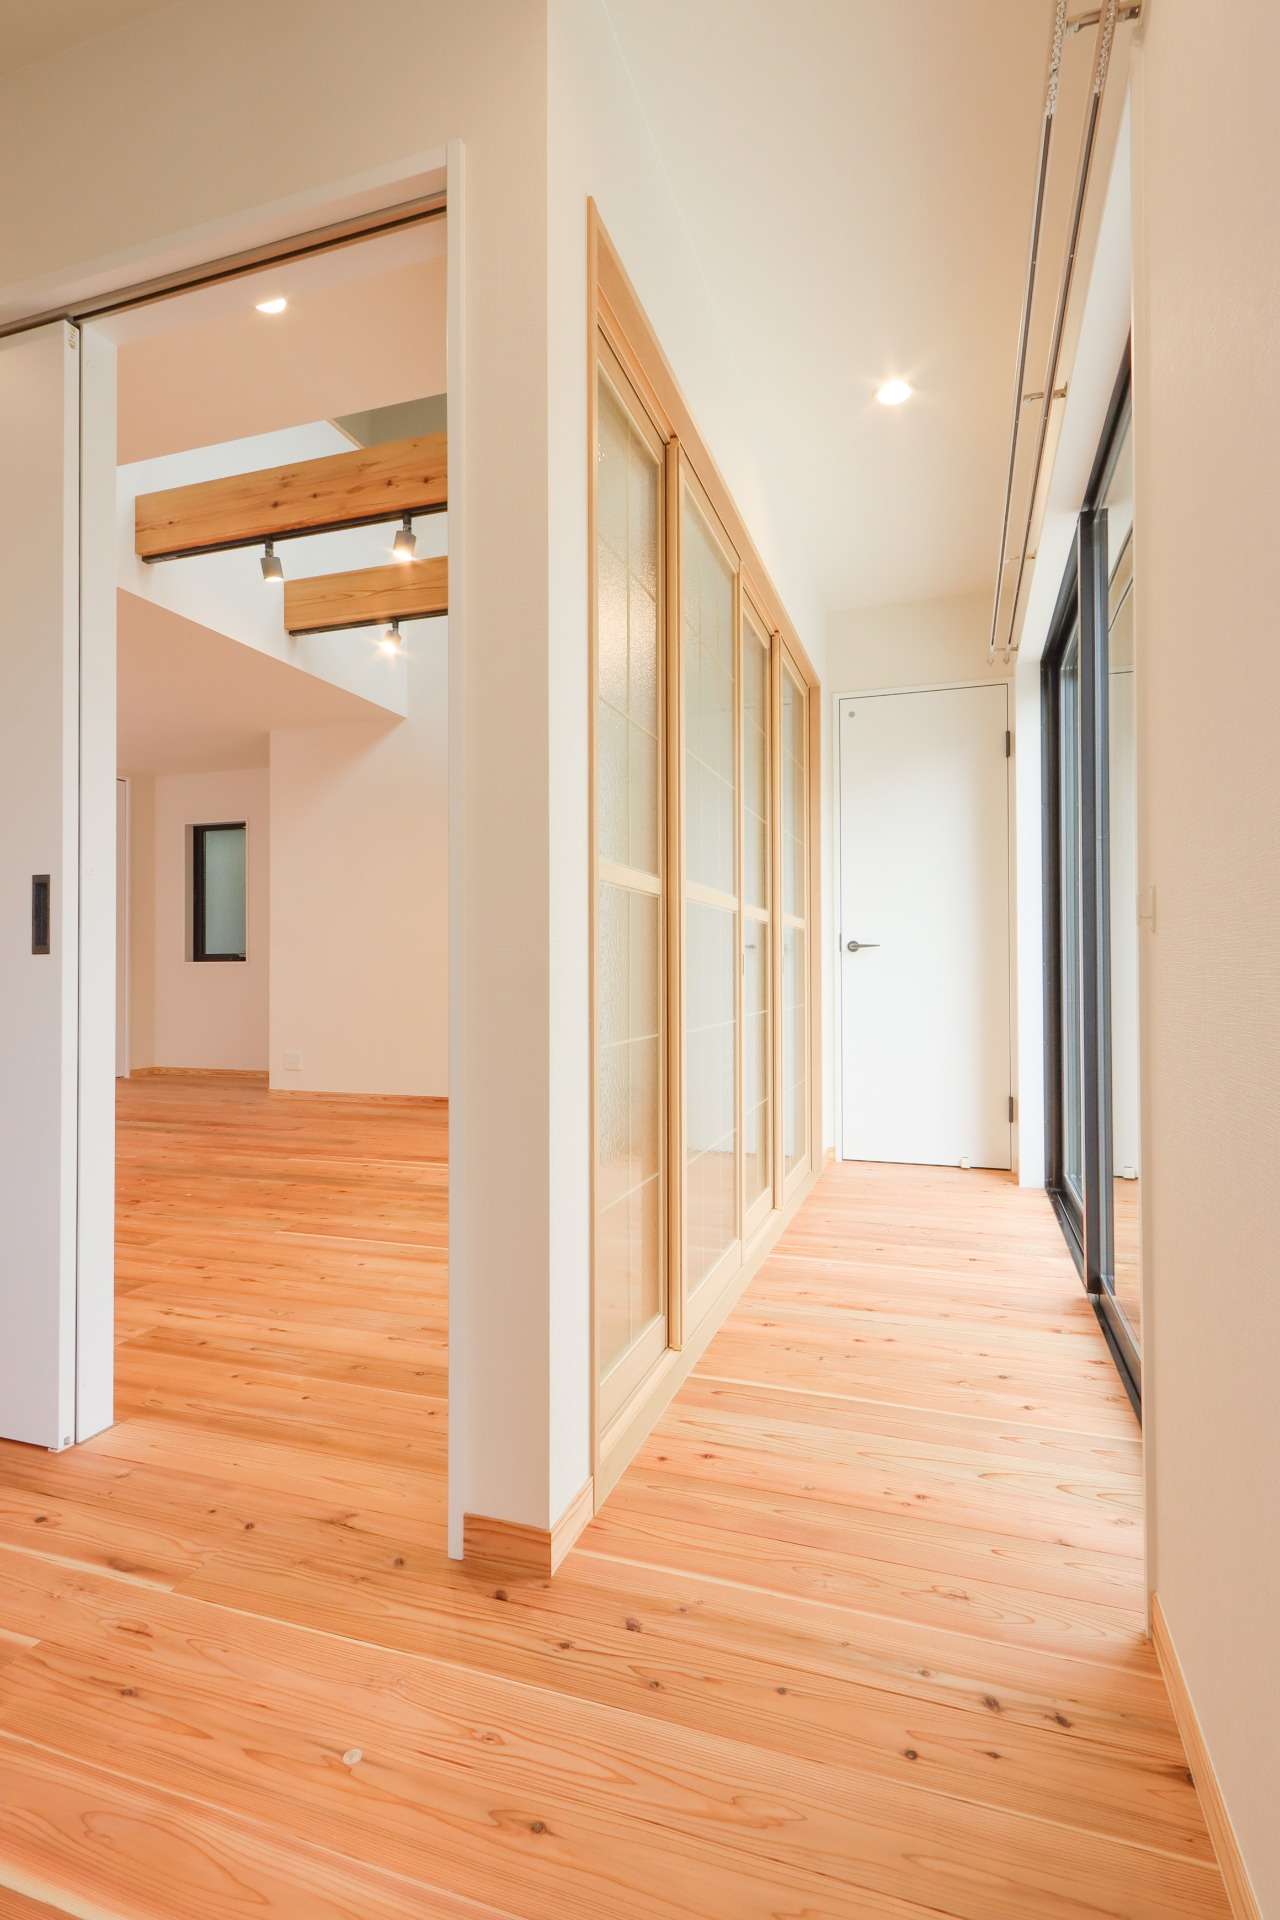 障子デザインの建具で廊下と空間を区別。光は通すが、室温はしっかり保てる